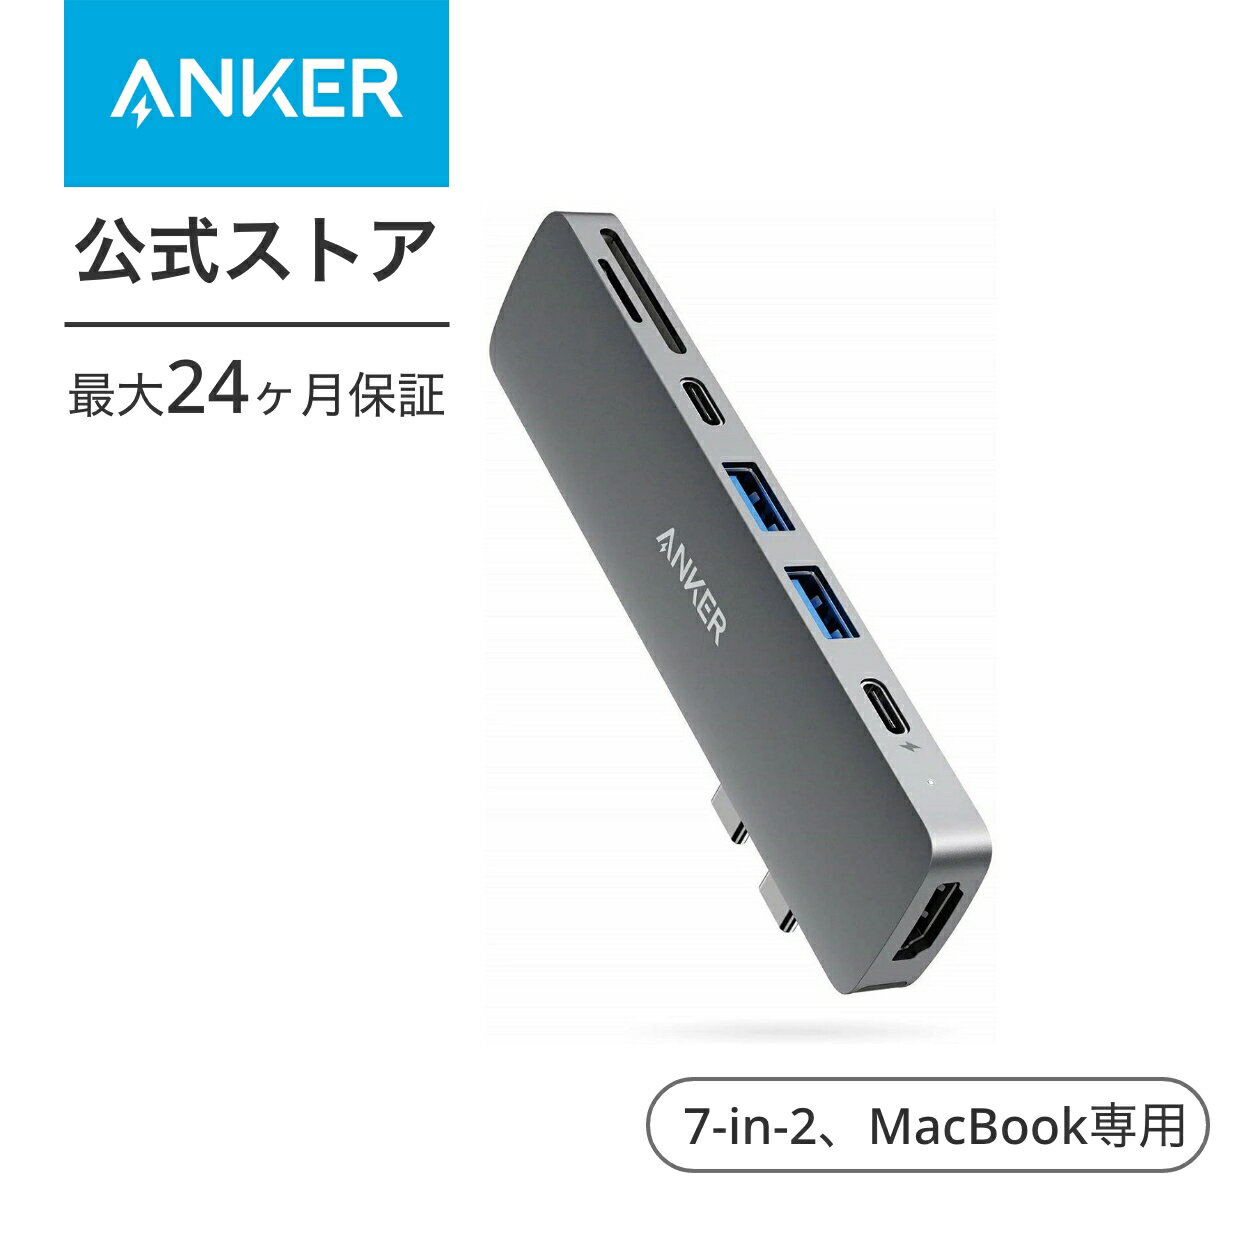 【1,800円OFF 5/16まで】Anker PowerExpand Direct 7-in-2 USB-C PD メディア ハブ 4K対応 HDMIポート 100W Power Delivery 対応 多機能USB-Cポート USB-A ポート microSD & SDカード スロット搭載